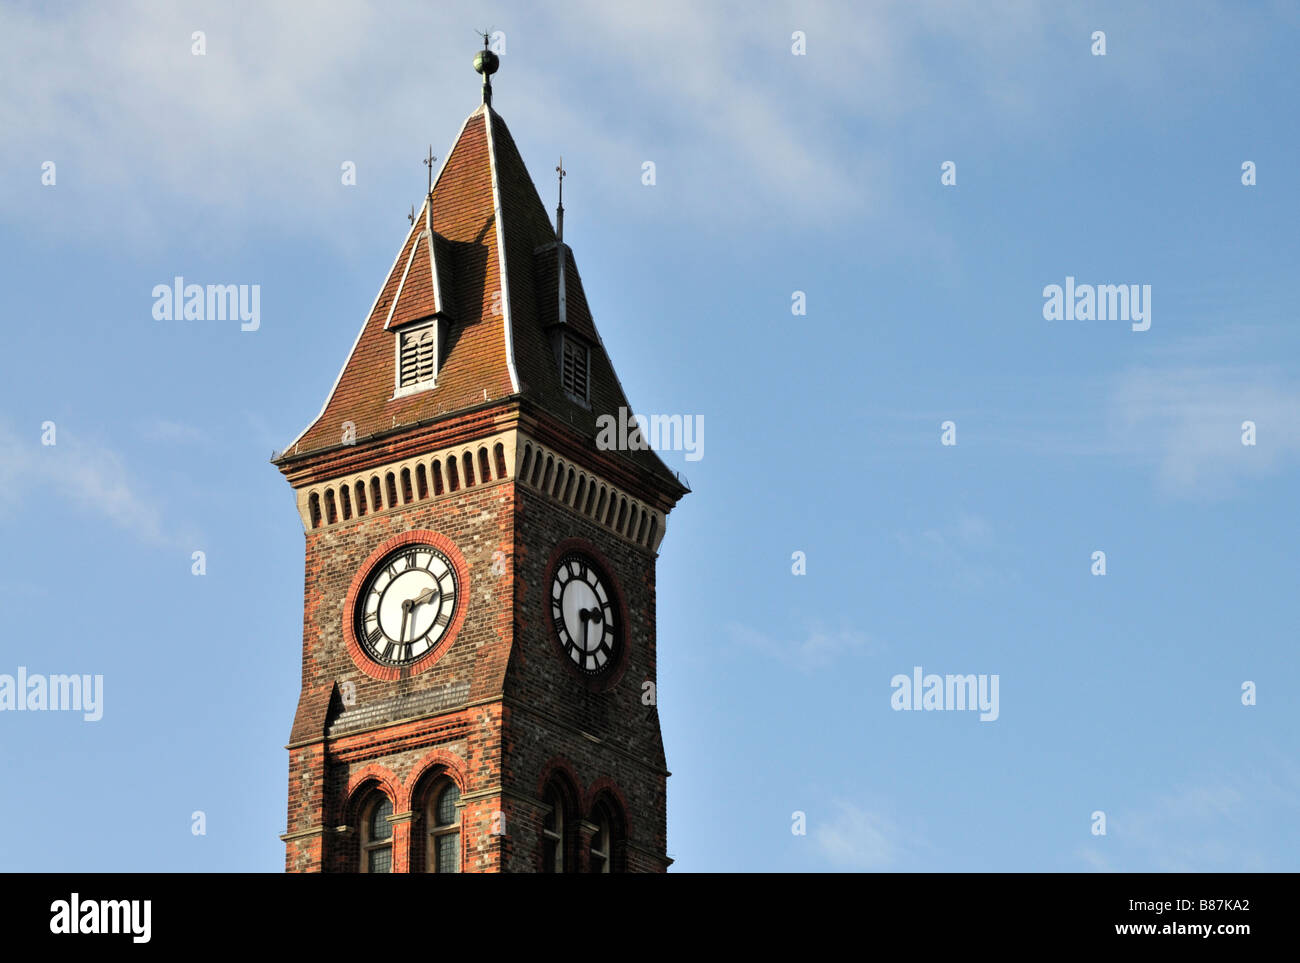 Newbury Town Hall tower, Newbury, Berkshire, UK Stock Photo